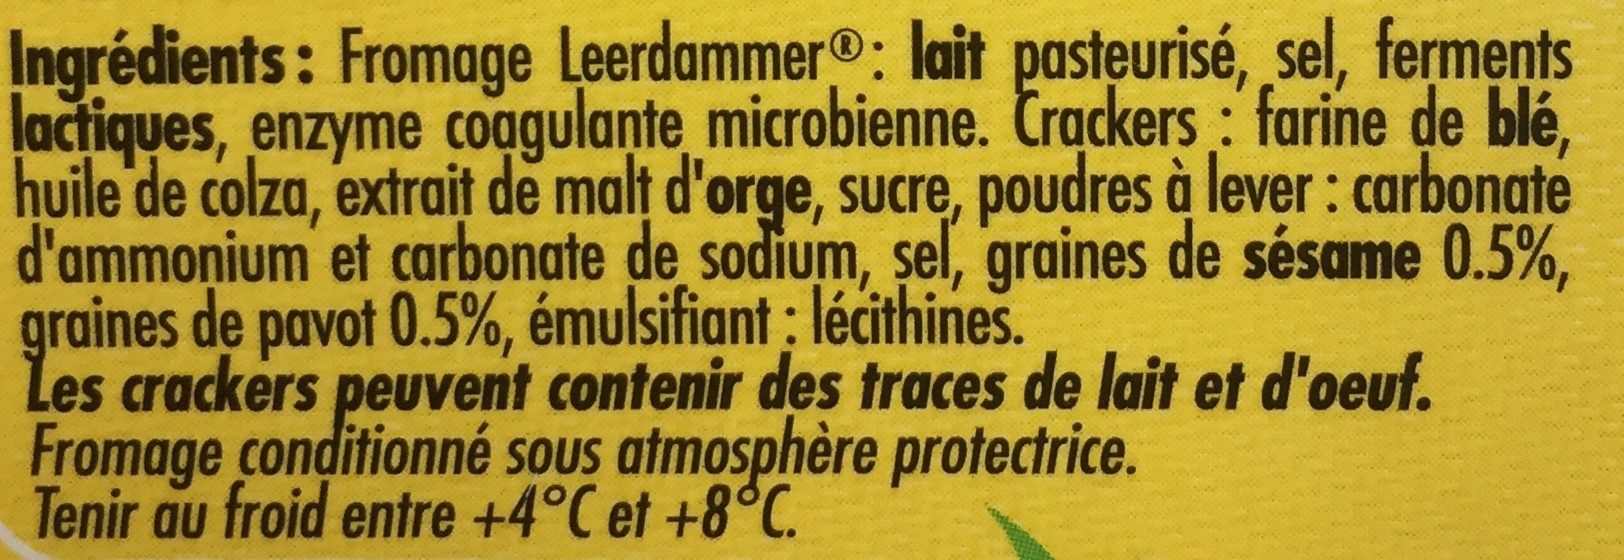 Leerdammer Break Crackers - Ingredients - fr